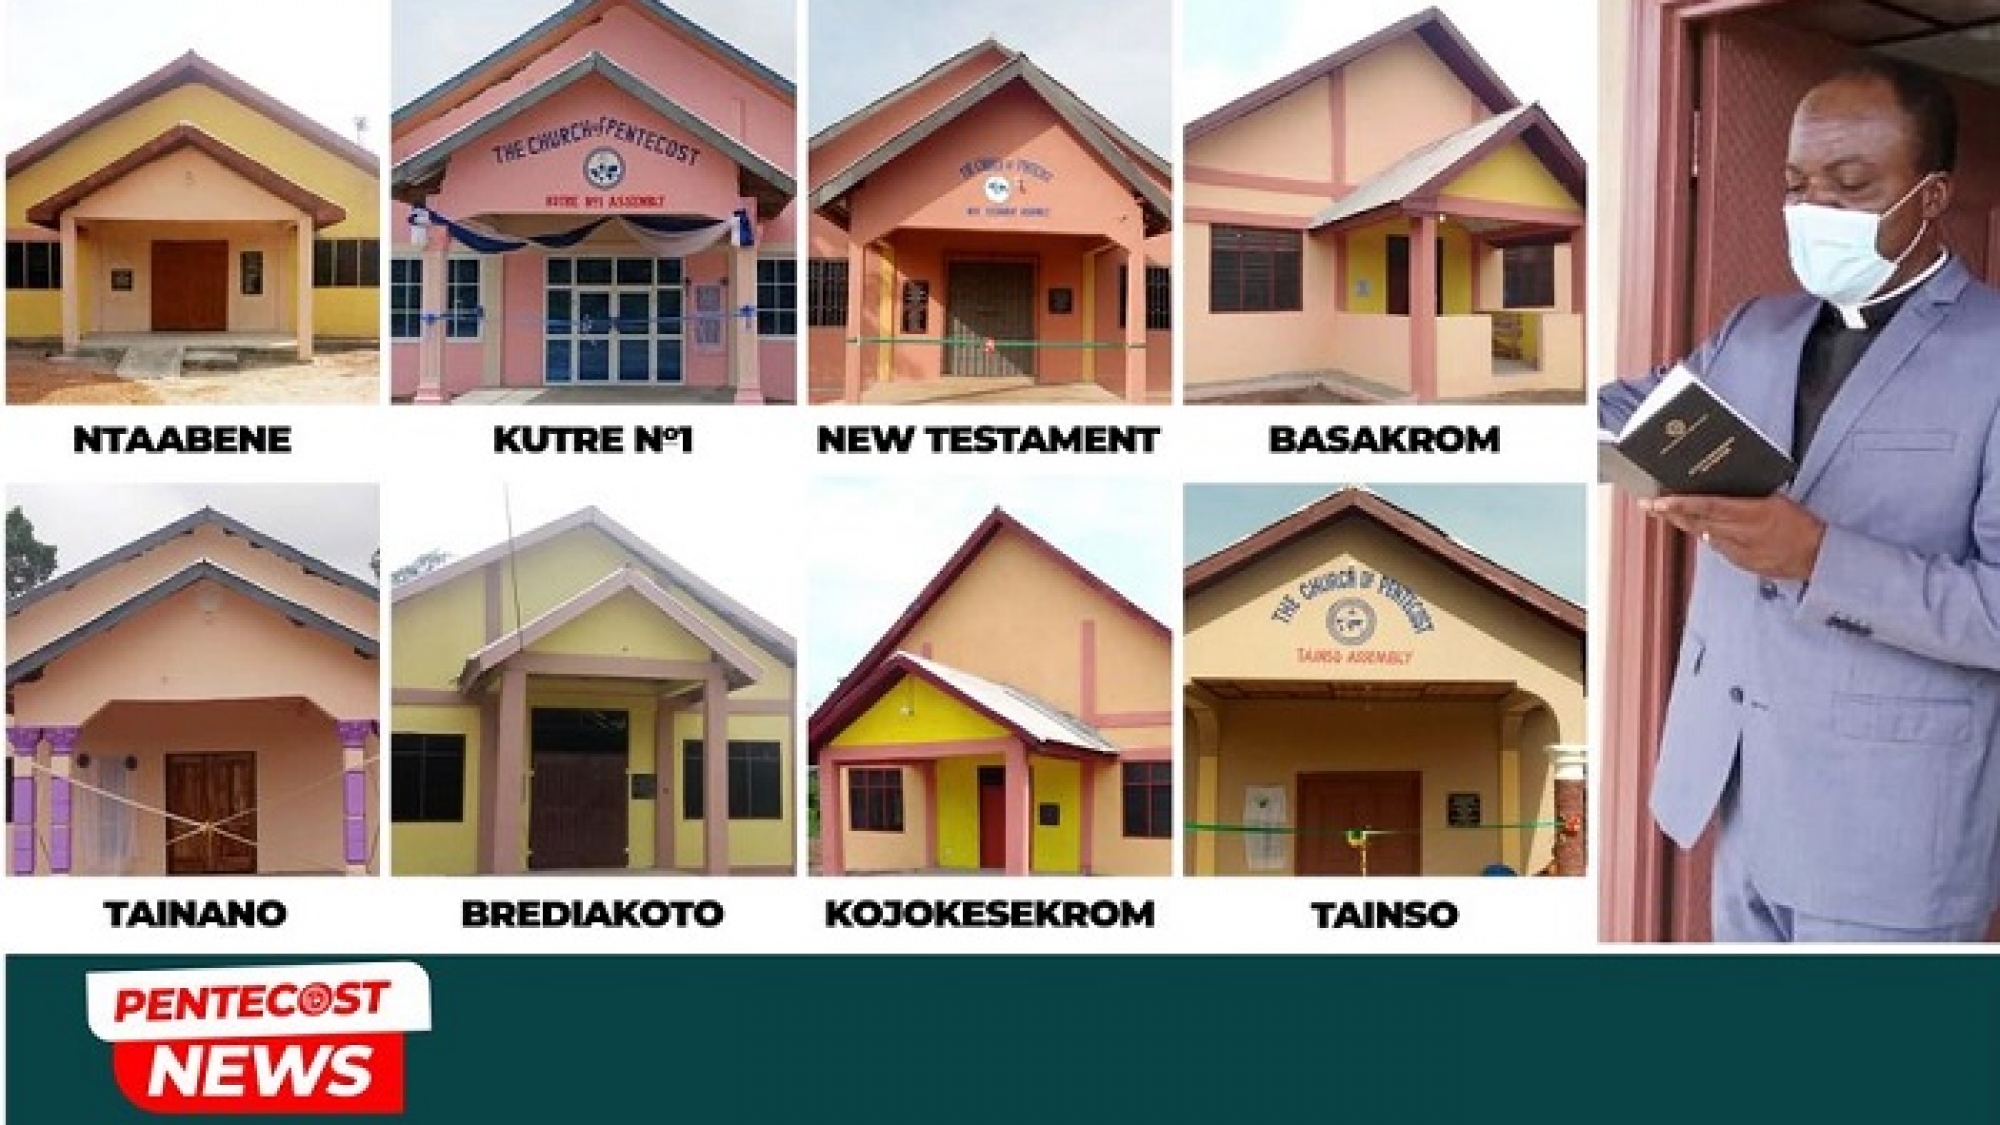 Berekum Area Dedicates 8 Church Buildings In A Month (002)